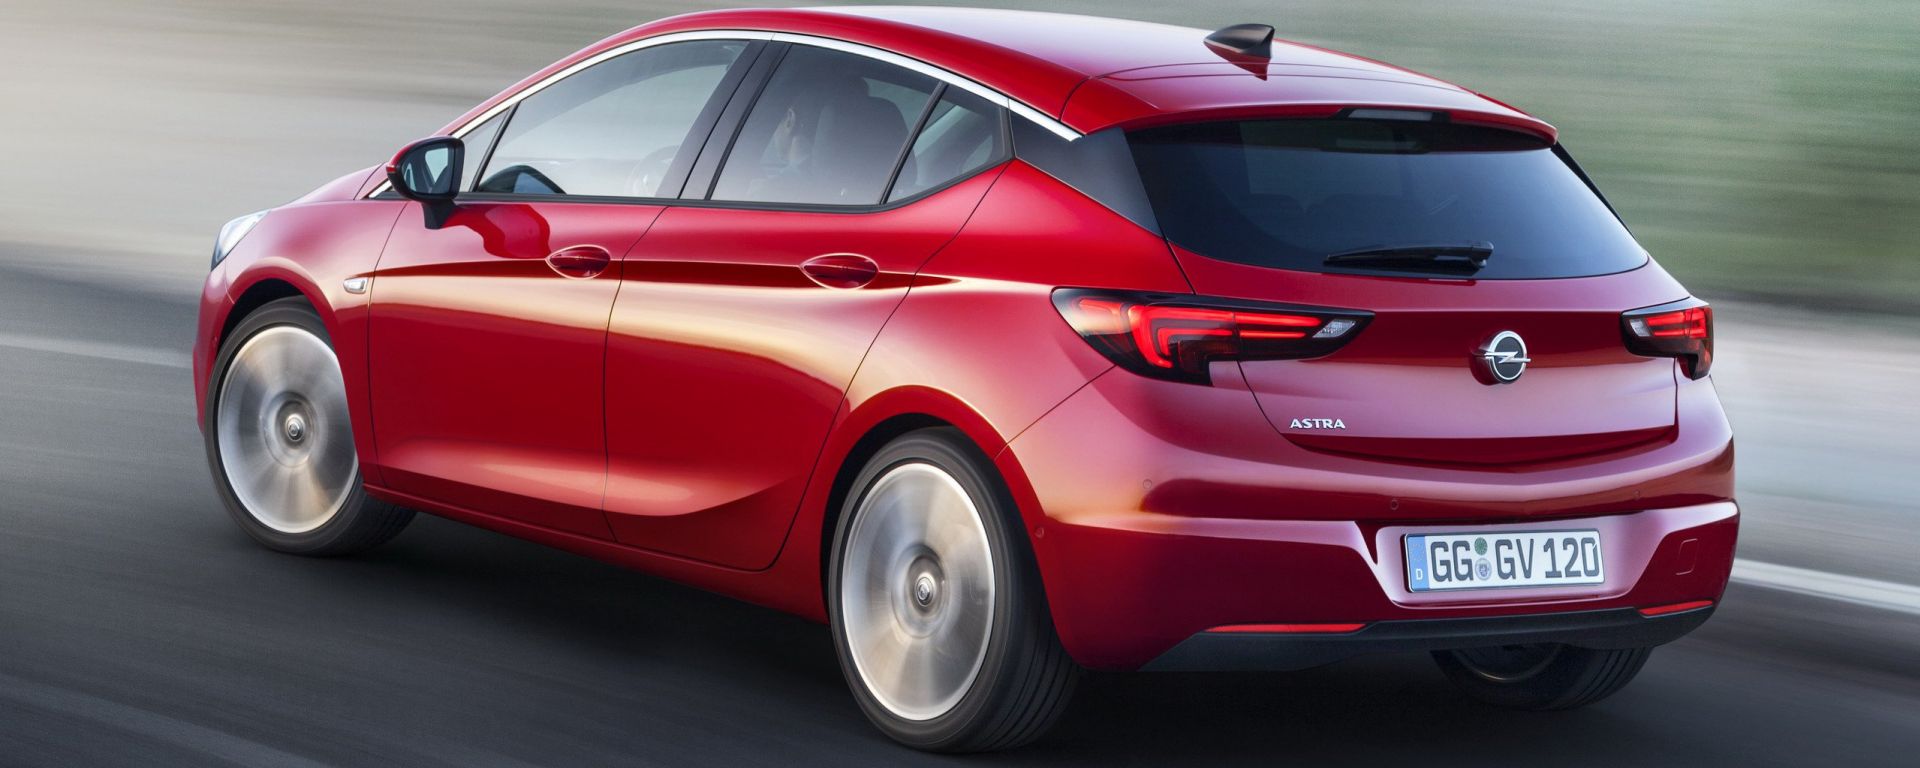 Nuova Opel Astra, dal 2021 anche ibrida ed elettrica su pianale PSA - MotorBox